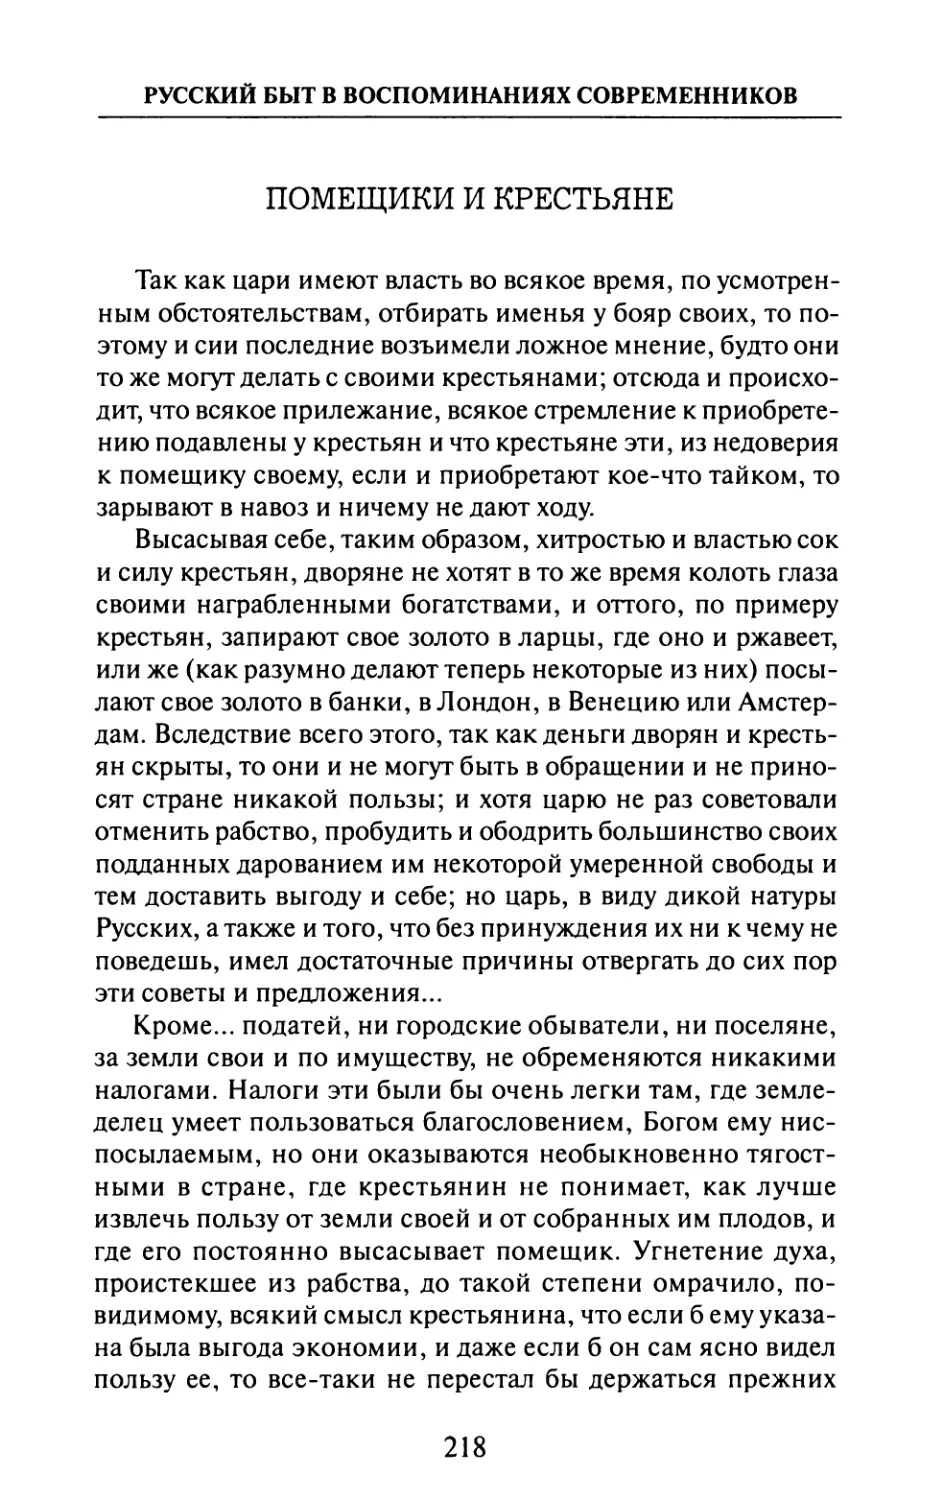 Помещики  и  крестьяне  —  Ф.  Вебер.  «Записки»  «Русский Архив»,  1872  г